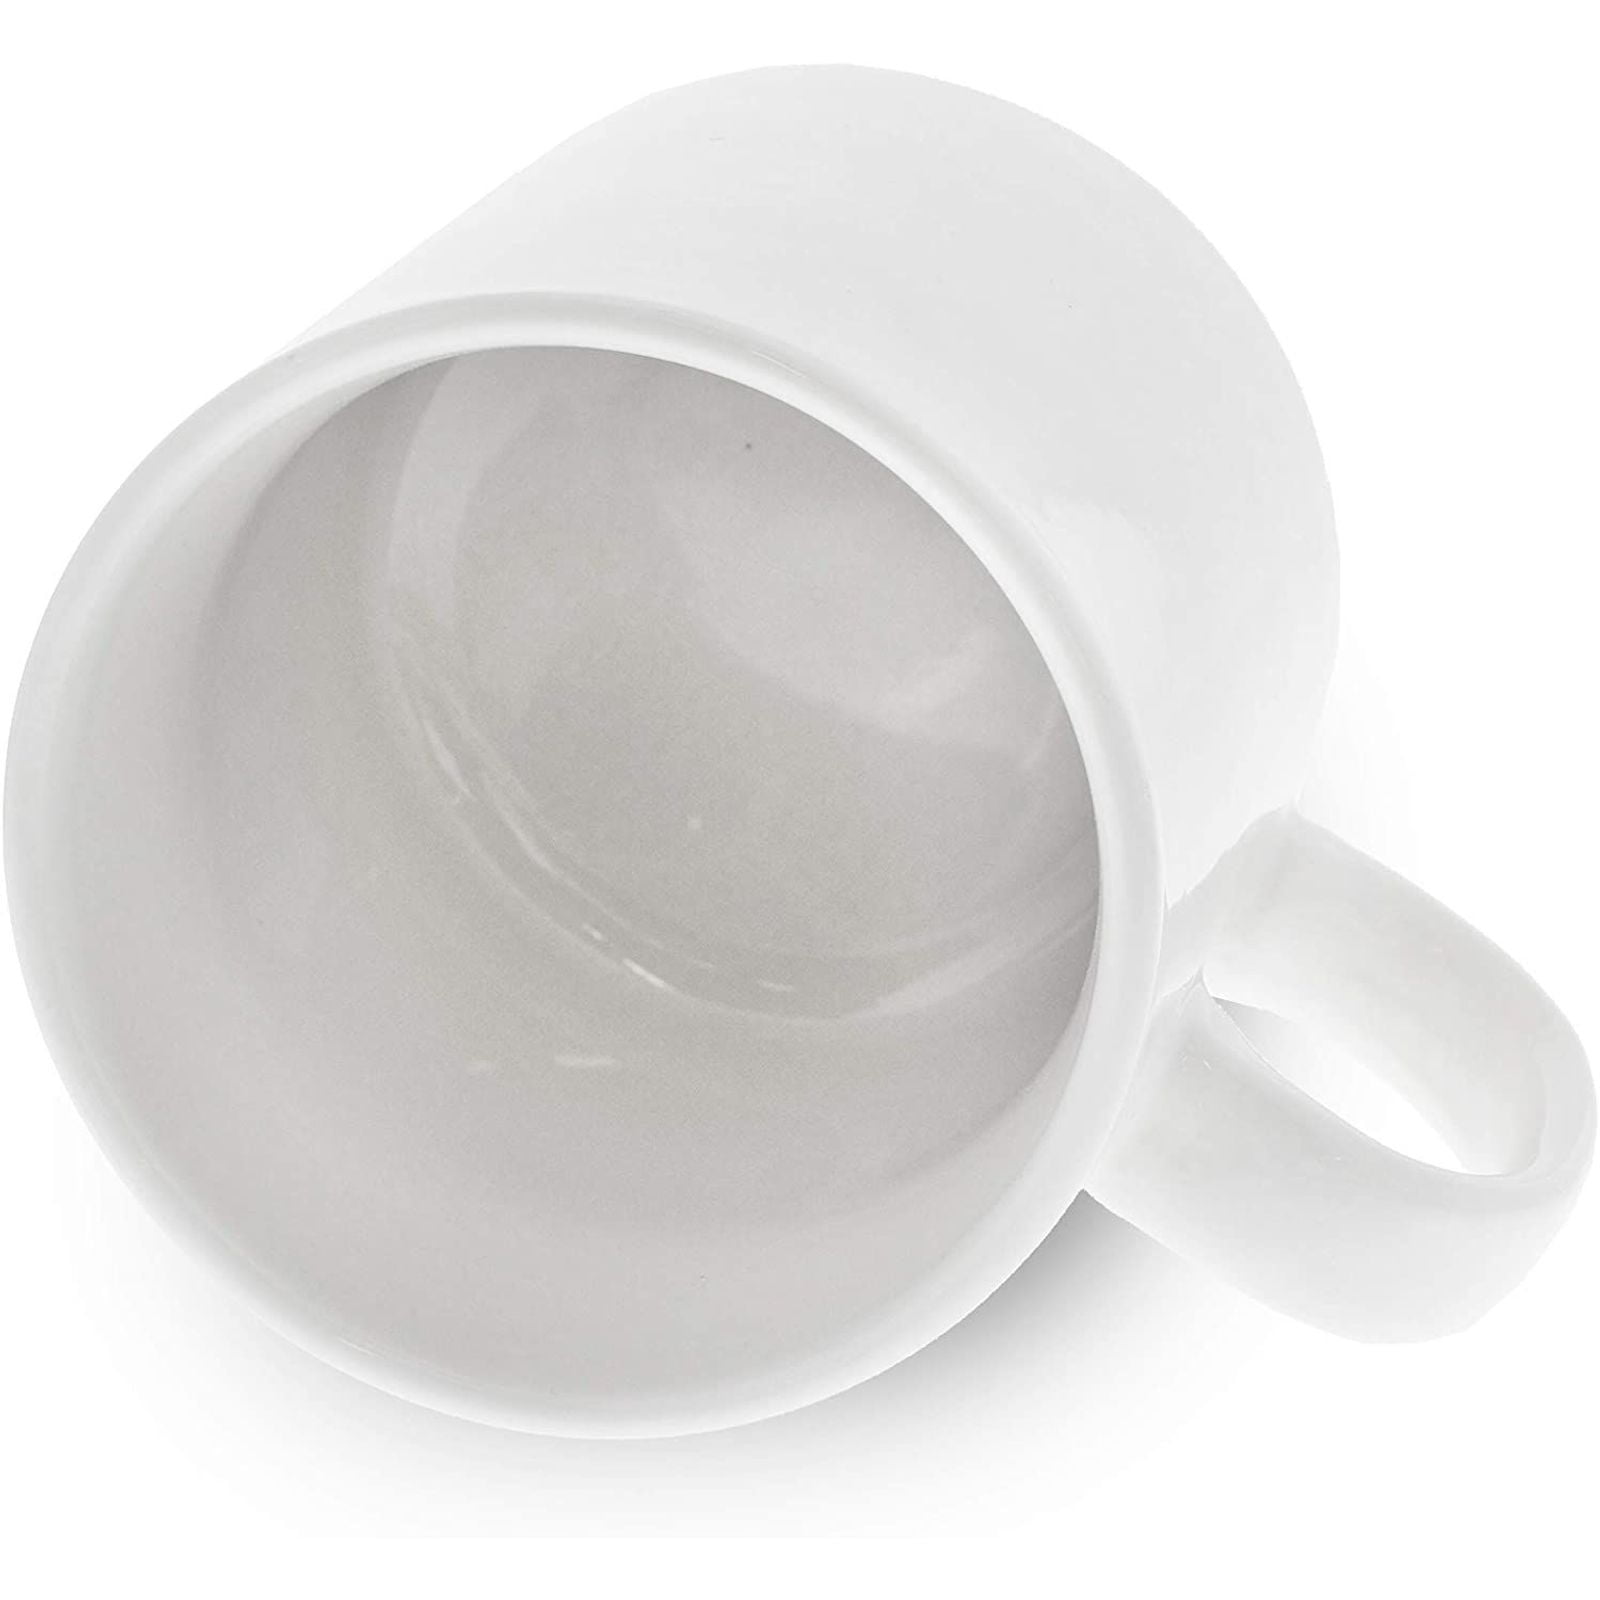 Cackalacky® Ceramic Coffee Mug 16 Oz